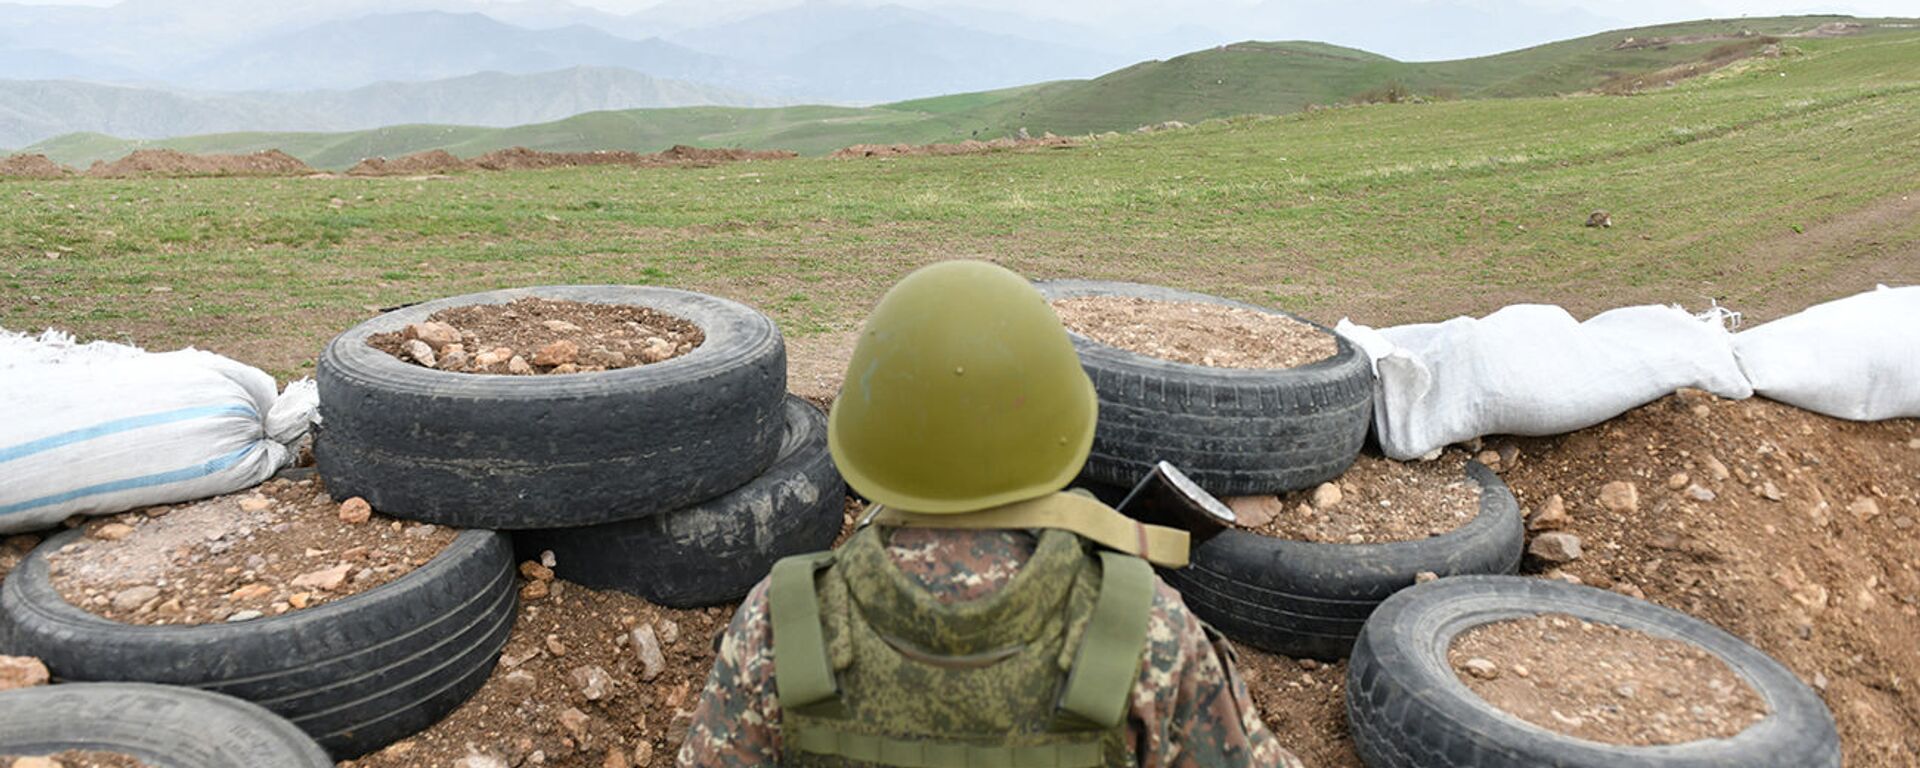 Армянский военнослужащий на армяно-азербайджанской границе - Sputnik Армения, 1920, 28.07.2021